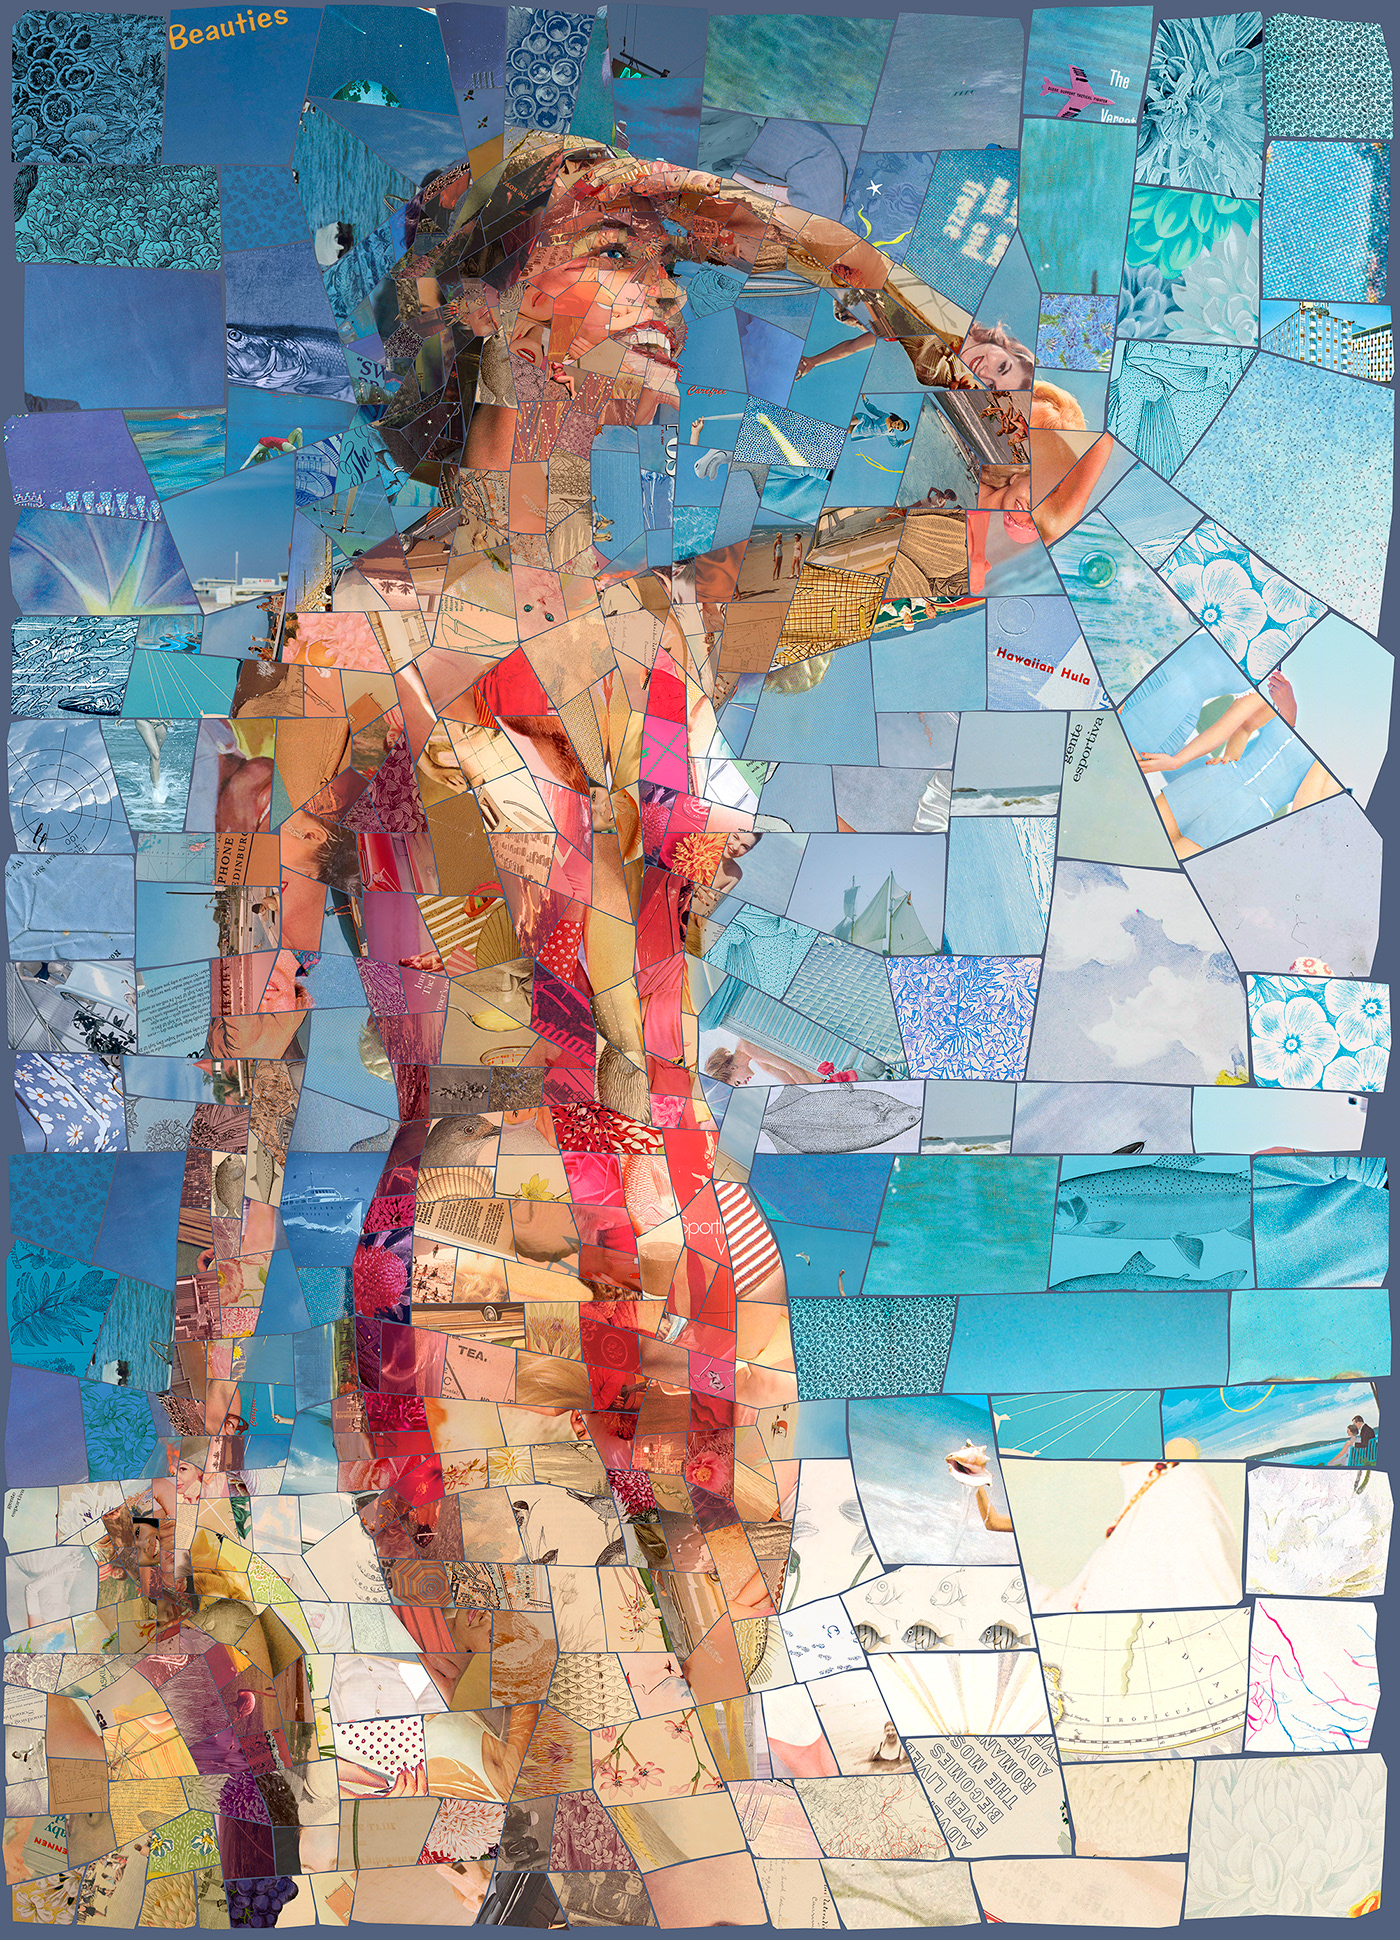 mosaic photomosaic photocollage retro beach nostalgia vintage collage texture pattern visual design